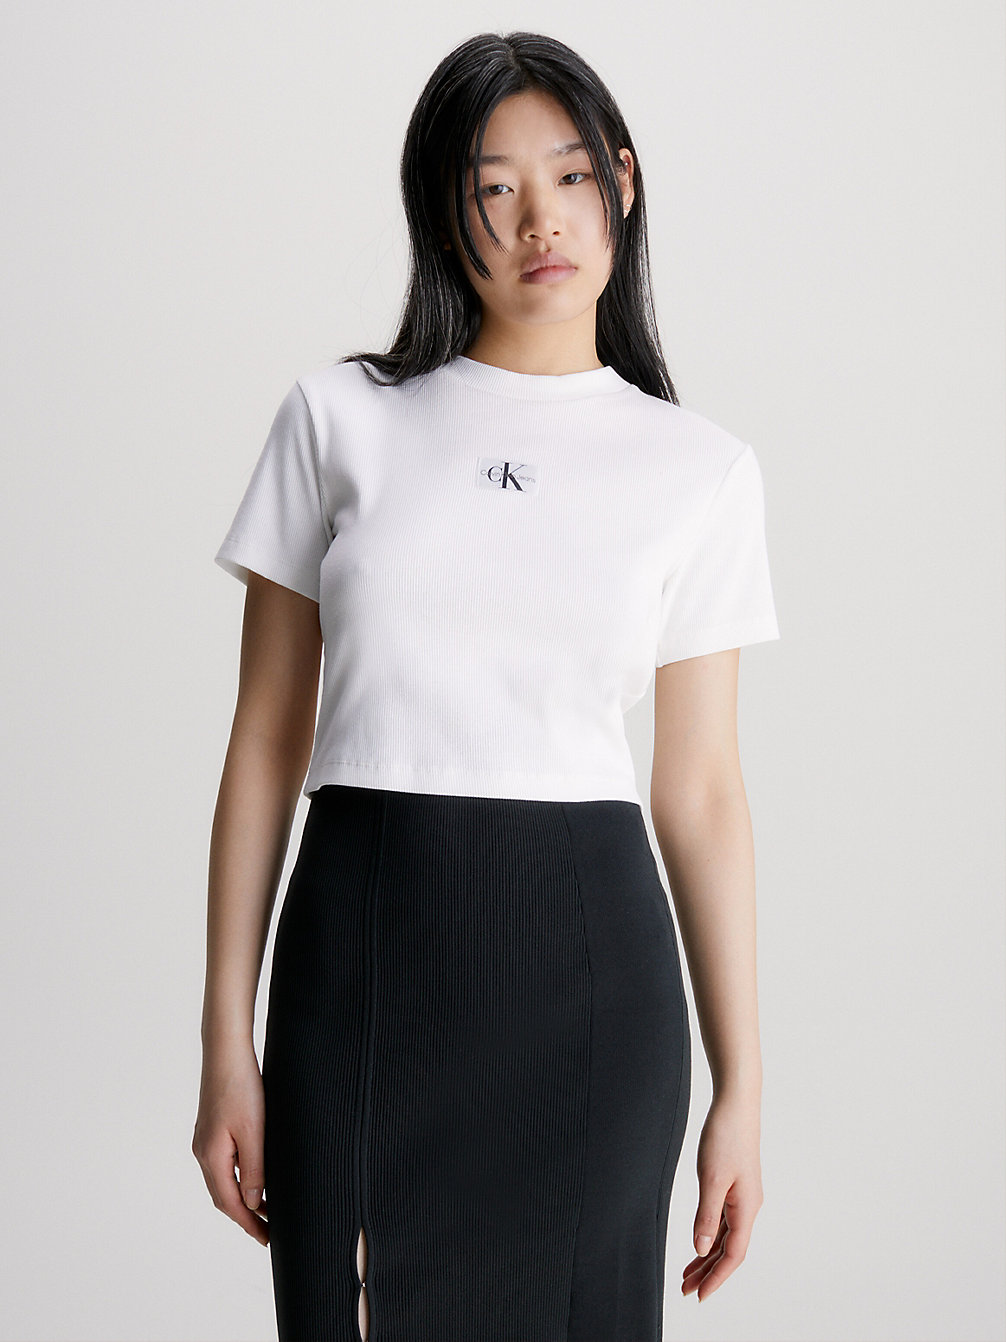 BRIGHT WHITE > Geripptes Jersey-T-Shirt Mit Badge > undefined Damen - Calvin Klein